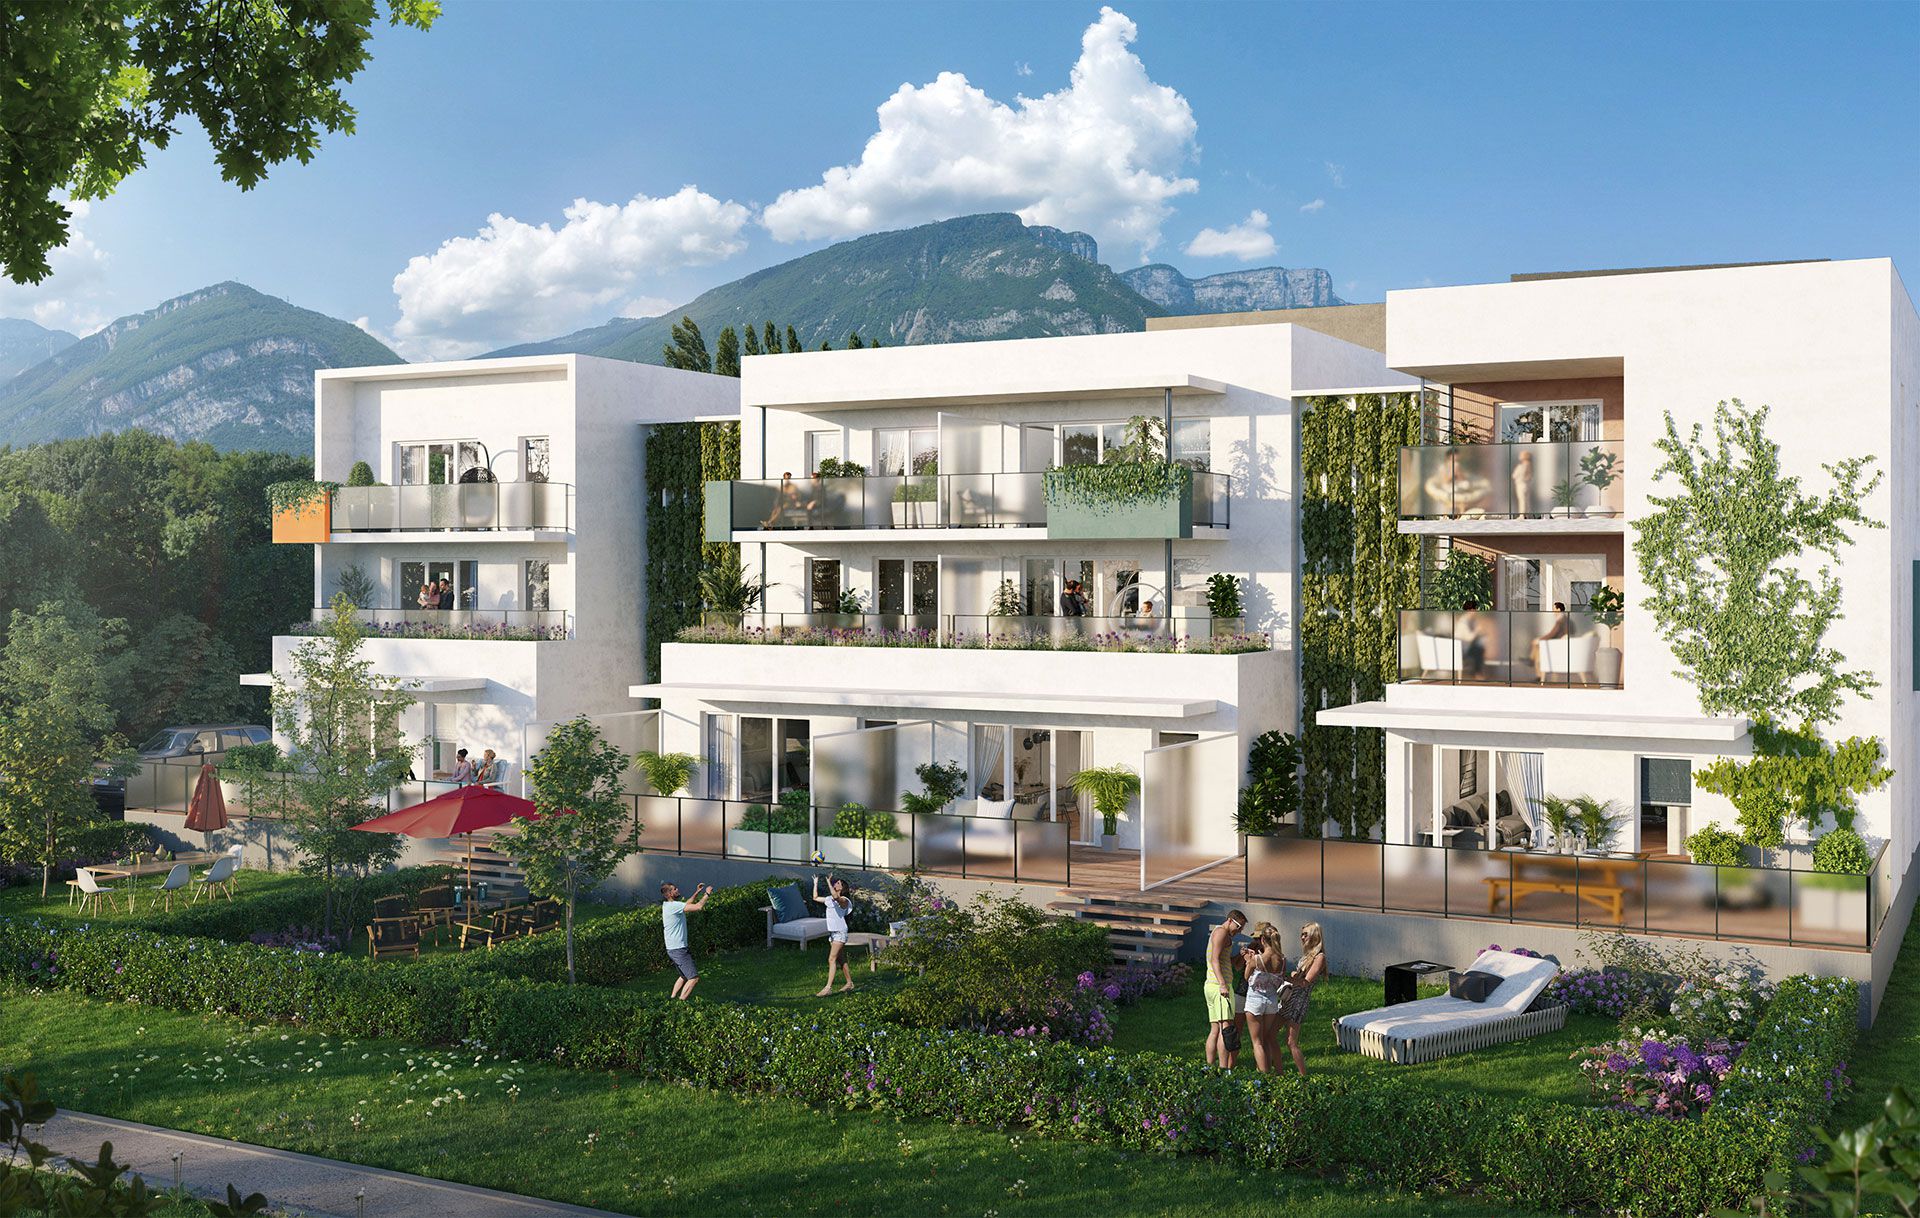 Programme immobilier EUR20 appartement à Saint-Egrève (38120) La nature aux abords de la ville